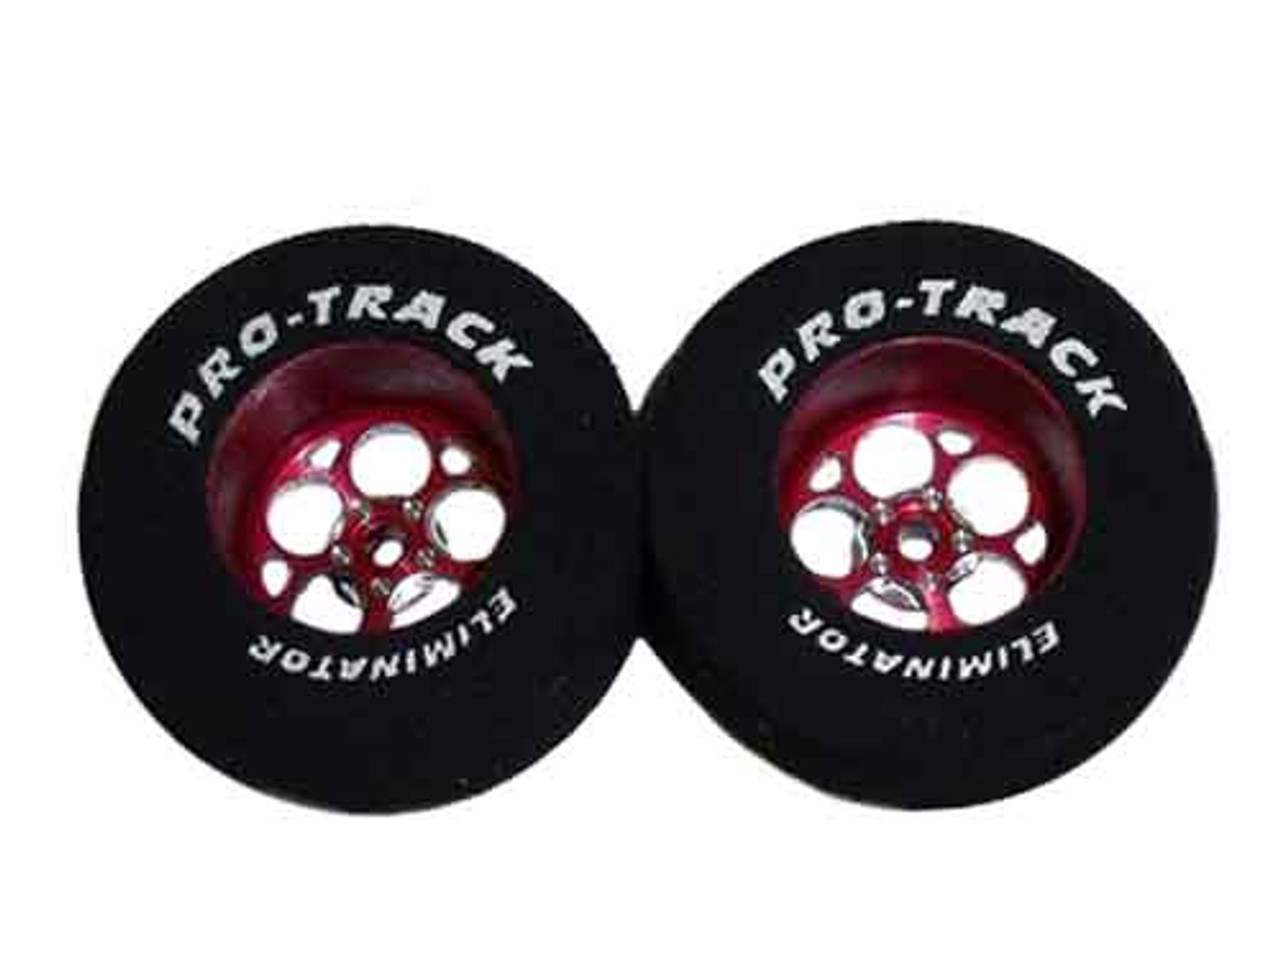 Pro-Track 1 3/16 x 3/32 x .500 wide Style J - Red - PTC-N408J-R